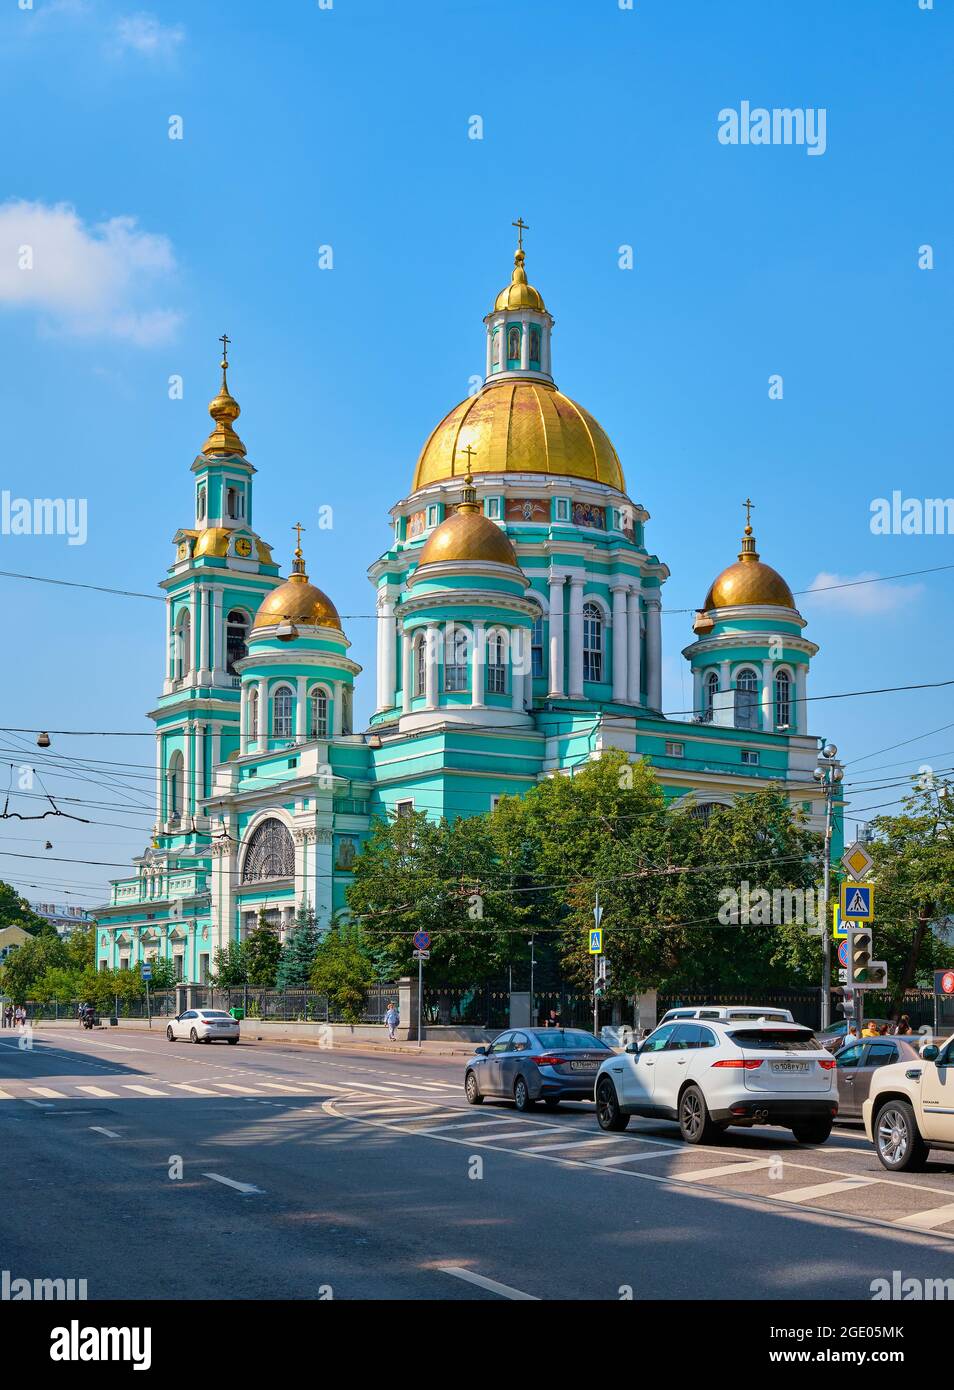 Vista della Cattedrale dell'Epifania a Elokhovo, una delle più famose chiese ortodosse costruite nel 1835-1845: Mosca, Russia - 09 agosto 2021 Foto Stock